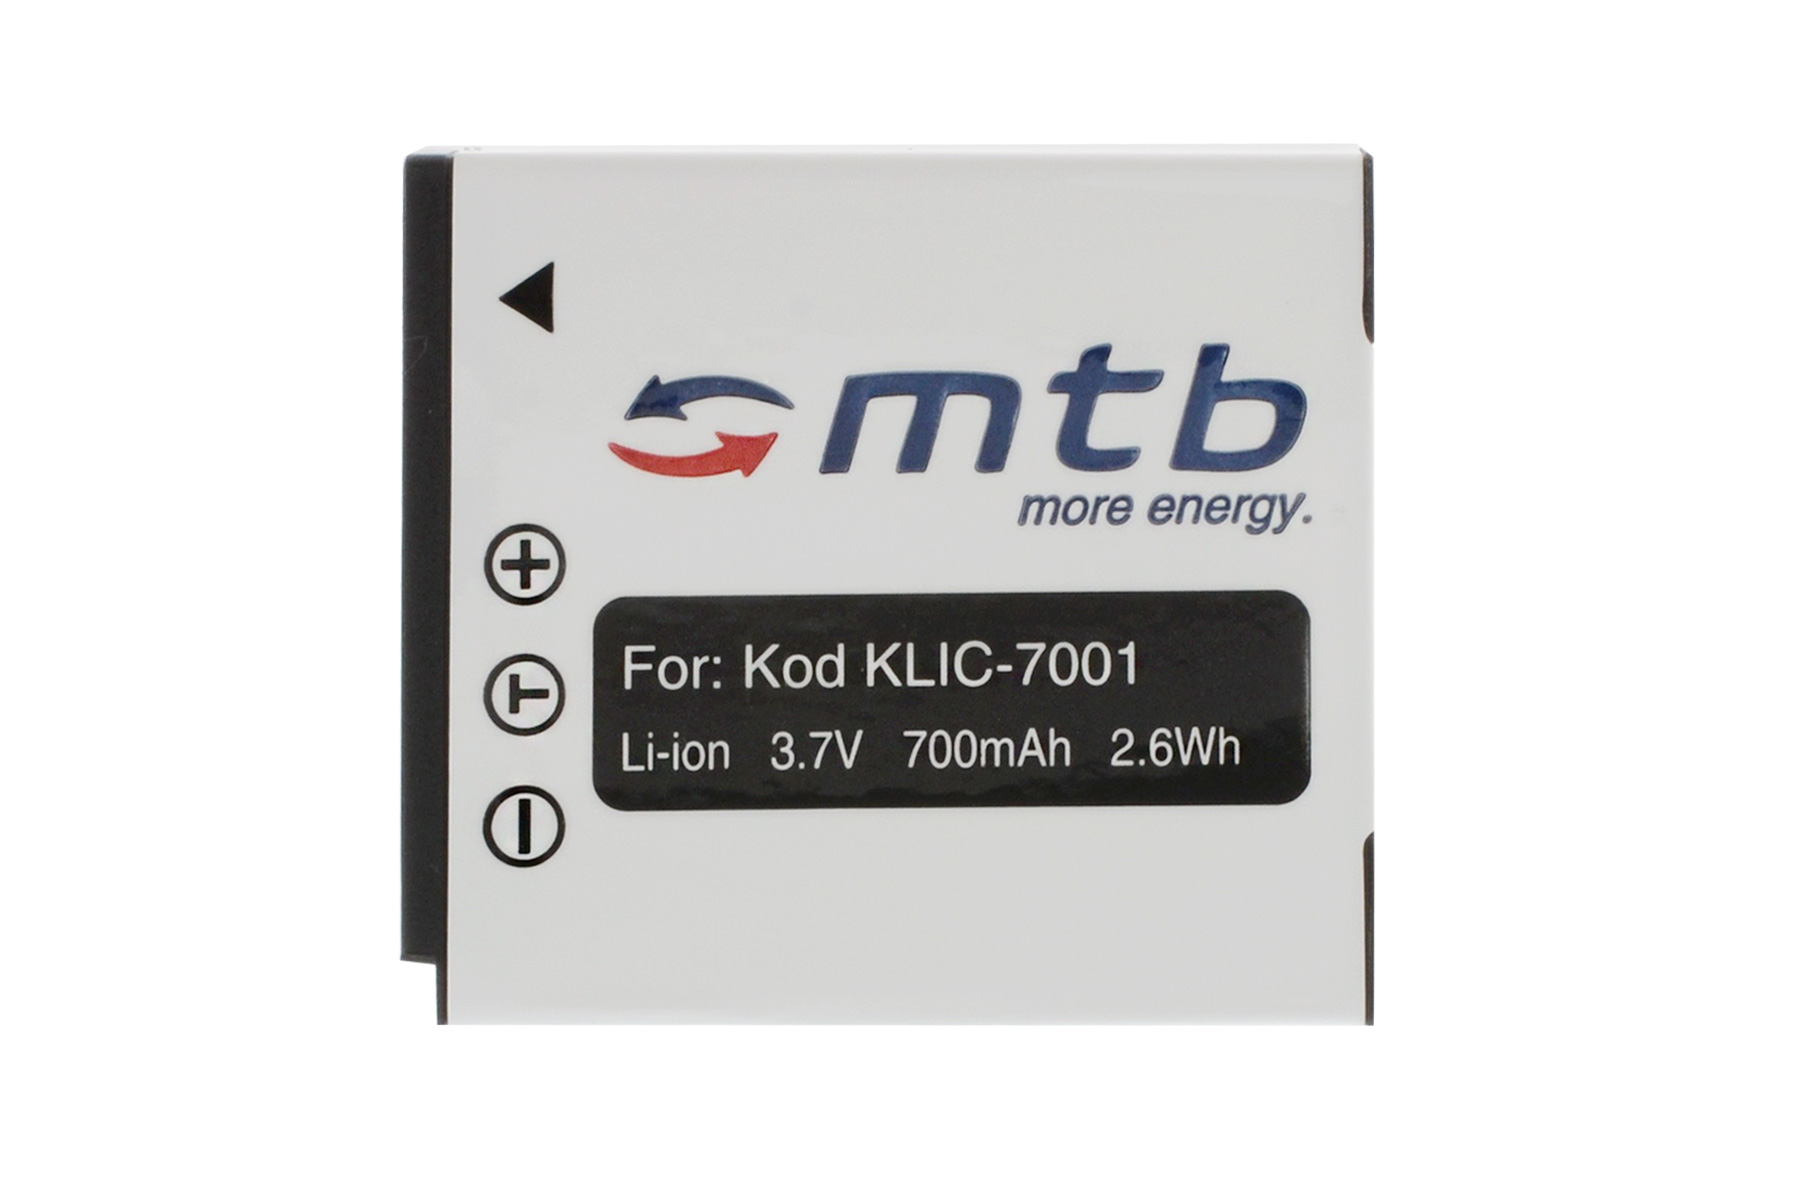 MTB MORE ENERGY 2x Li-Ion, mAh 700 BAT-029 KLIC-7001 Akku